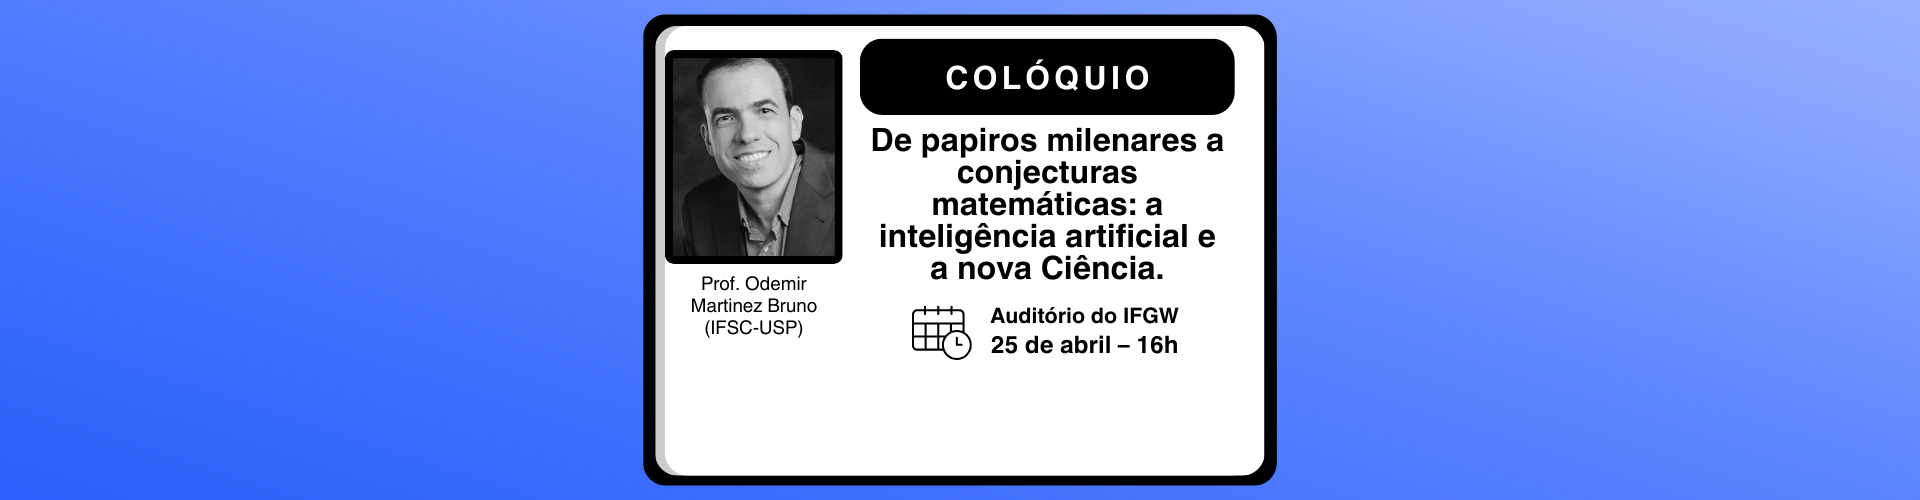 Colóquio da Pós-Graduação do IFGW - Prof. Odemir Martinez Bruno (Universidade de São Paulo)